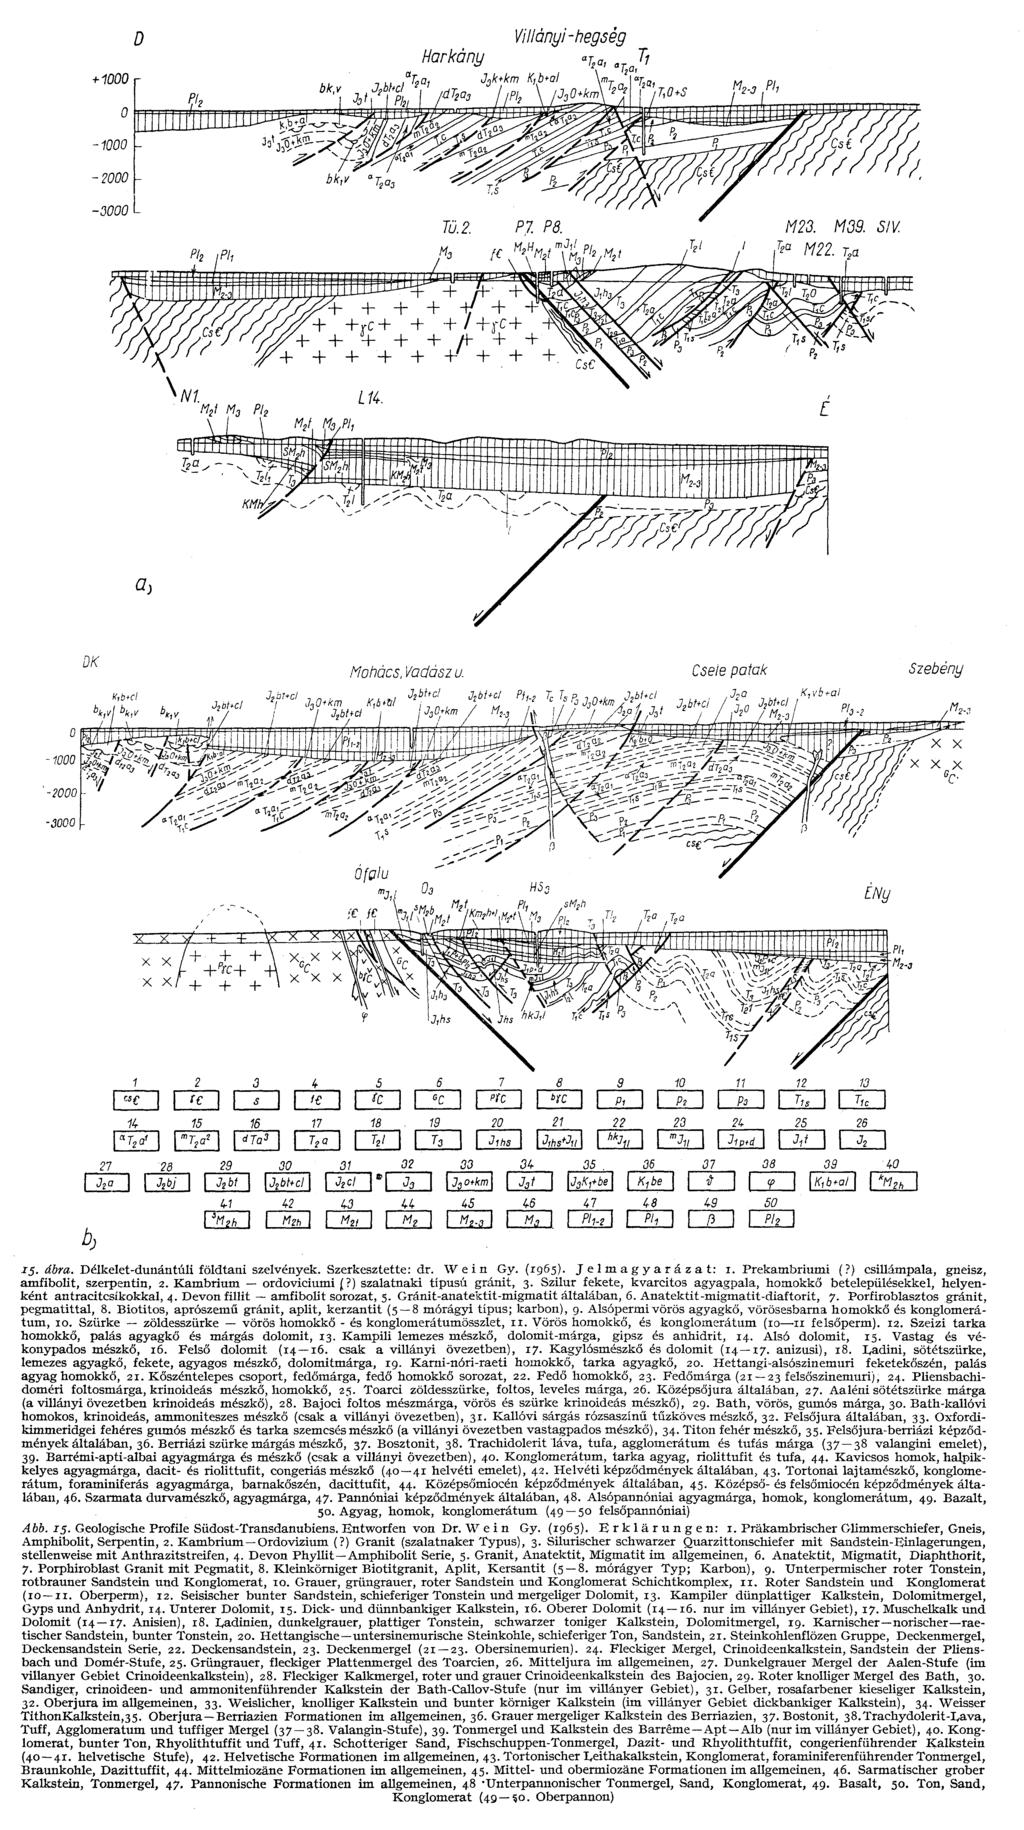 15- ábra. Délkelet-dunántúli földtani szelvények. Szerkesztette: dr. Wein Gy. (1965). Jelmagyarázat: 1. Prekambriumi (?) csillámpala, gneisz, amfibolit, szerpentin, 2. Kambrium ordoviciumi (?